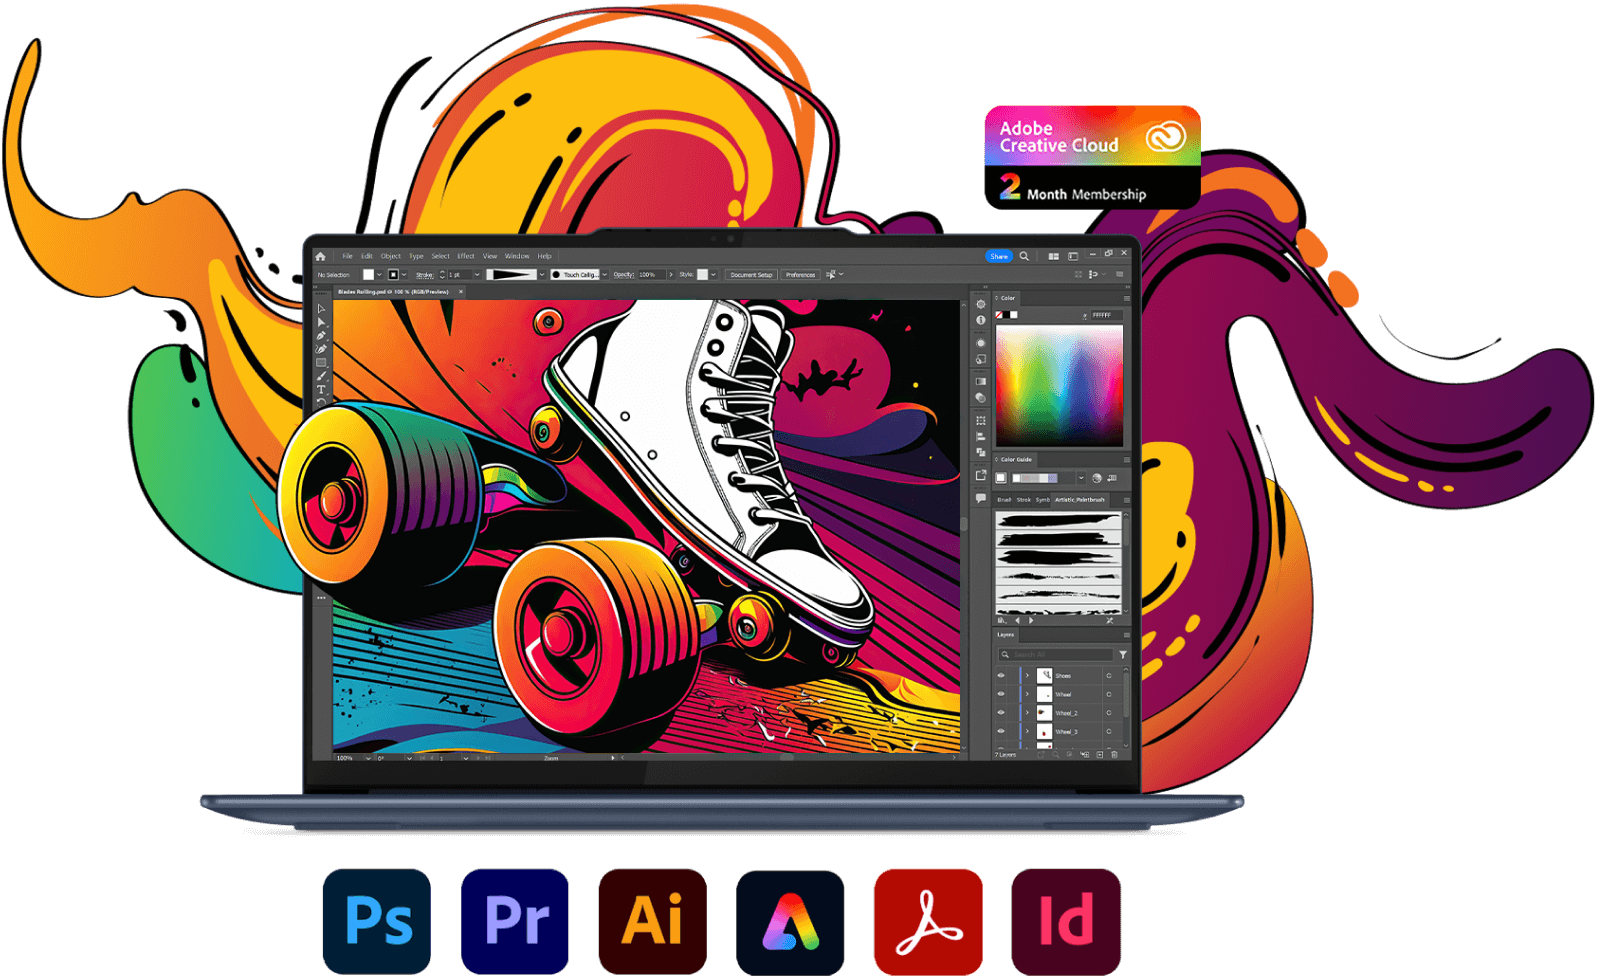 Το μπροστινό μέρος του φορητού υπολογιστή Lenovo Yoga με το Photoshop στην οθόνη, μαζί με διάφορα εικονίδια εφαρμογών Adobe Creative Cloud.